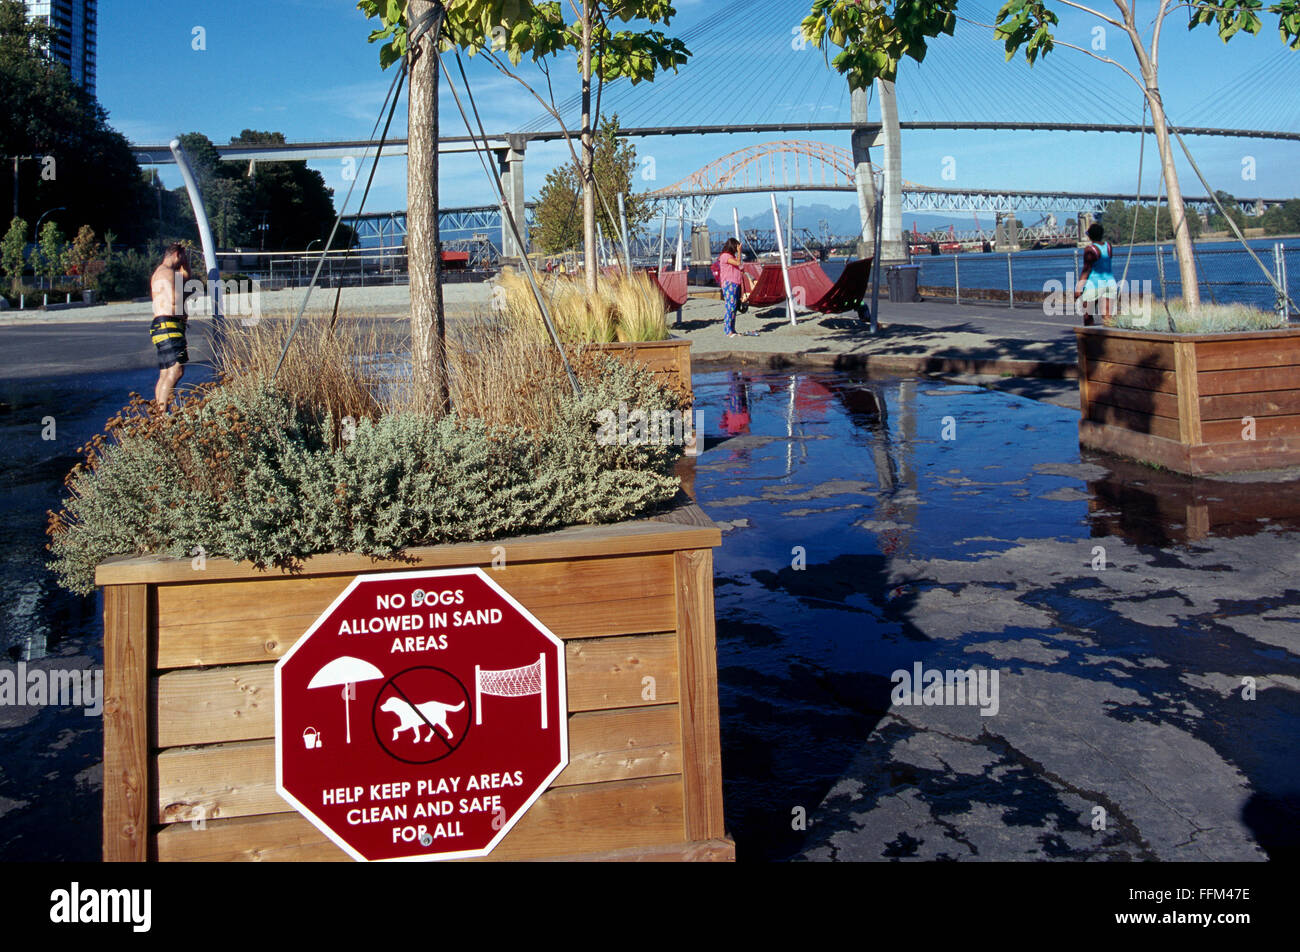 Westminster Pier Park am Fraser River, New Westminster, British Columbia, Kanada, Wasserpark für Kinder, keine Hunde erlaubt Zeichen Stockfoto